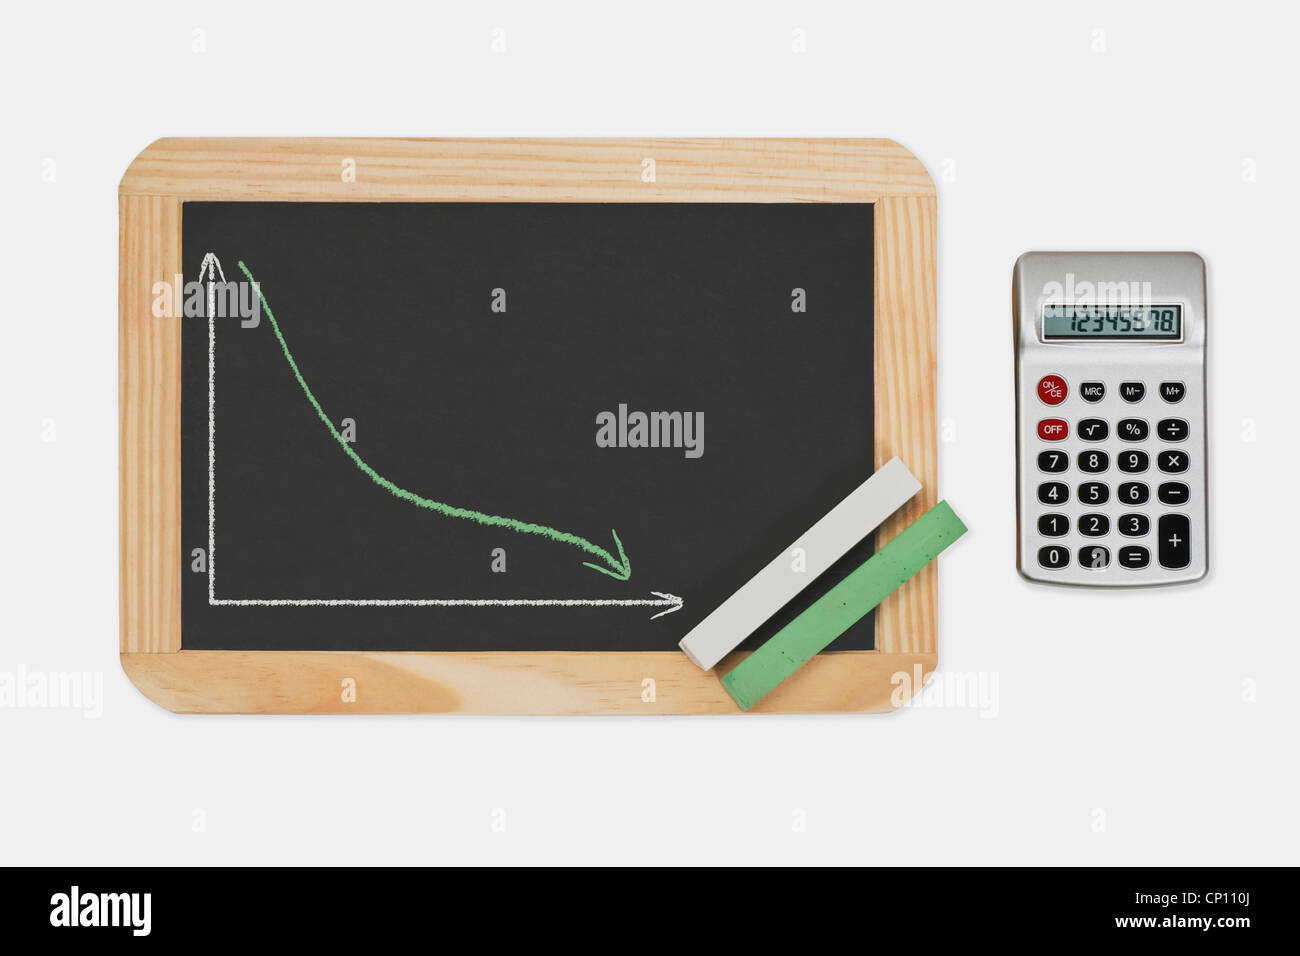 Lavagna, un grafico con una curva rifiutata. verde e bianco gesso si trova in un angolo, calcolatrice tascabile è sul lato destro Foto Stock